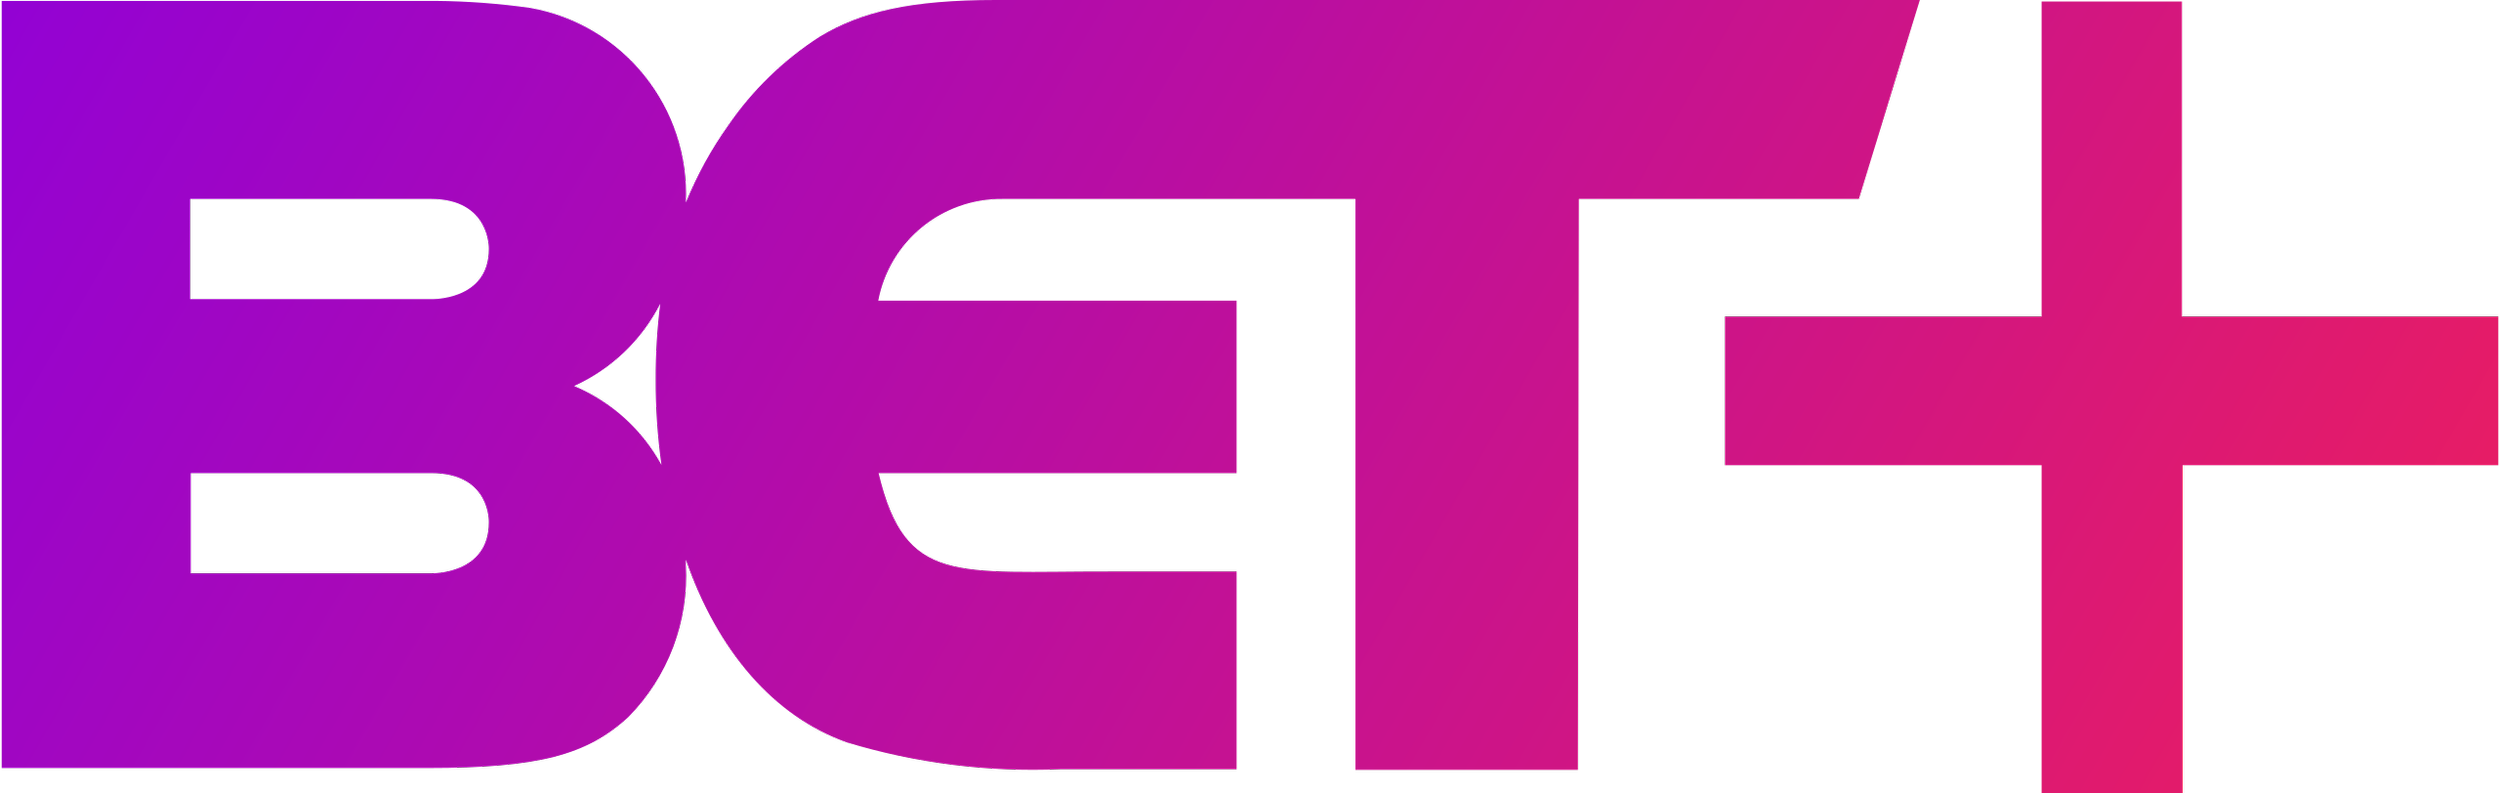 BET+_logo_2019.svg.png